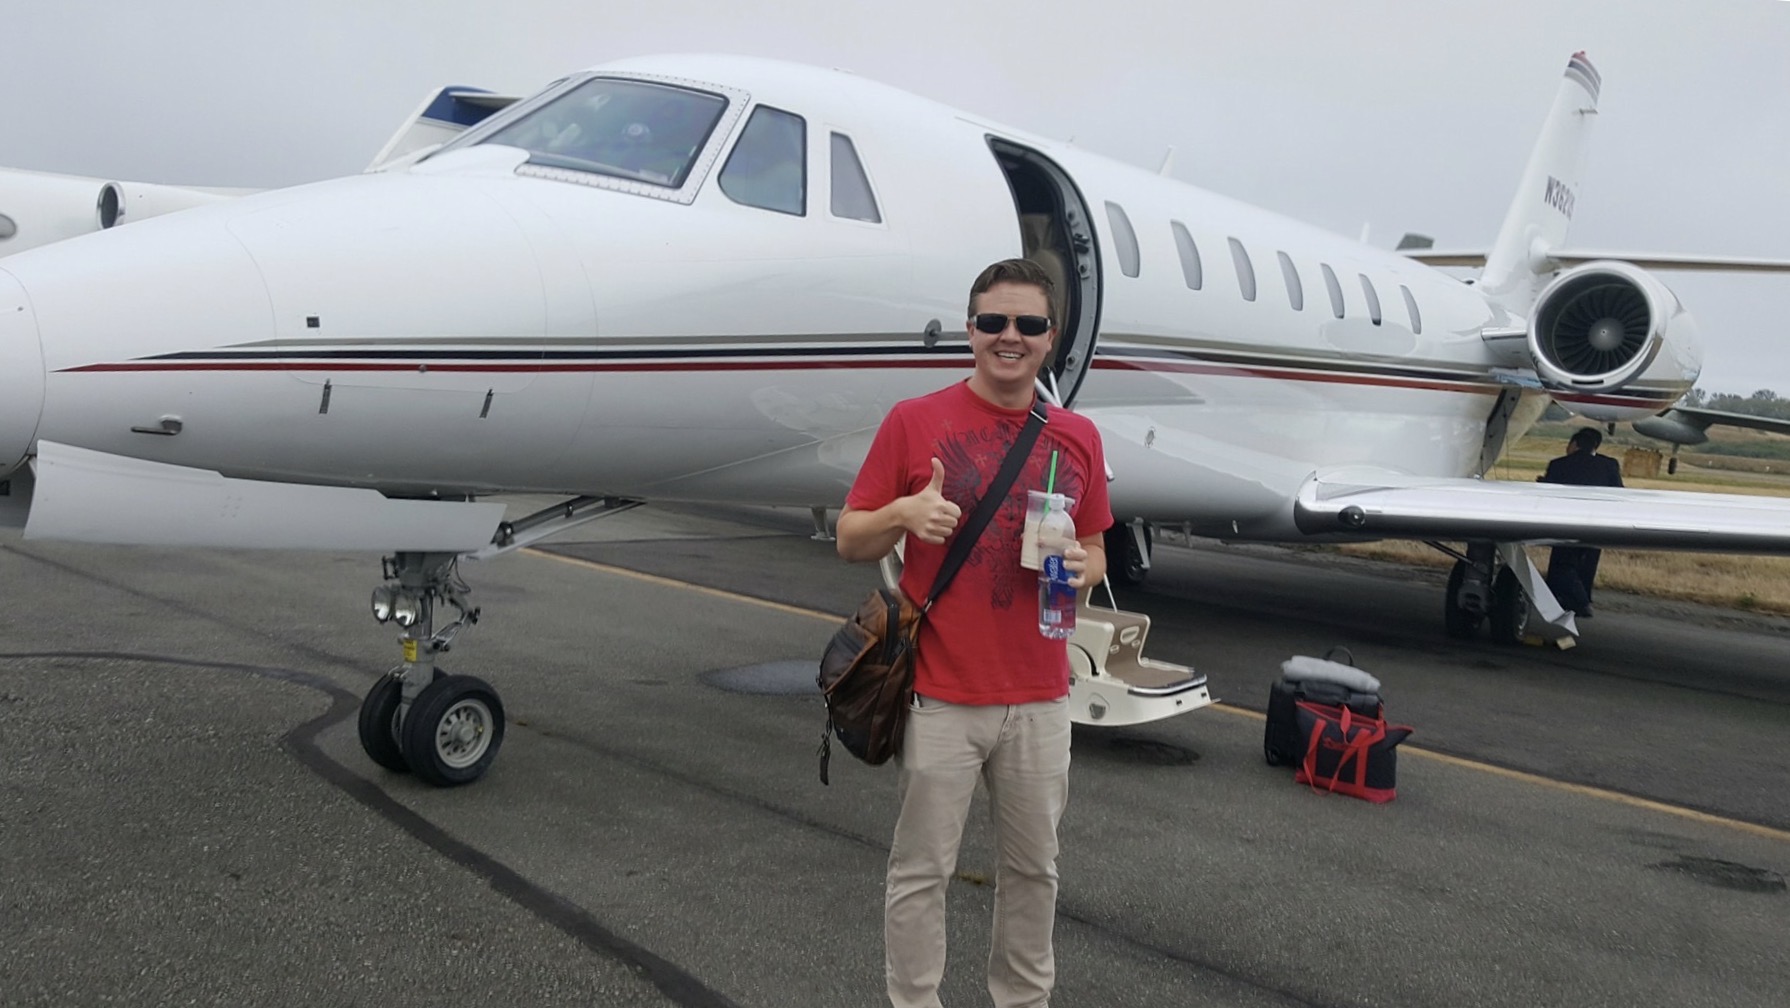 Joshua boarding jet with company CEO